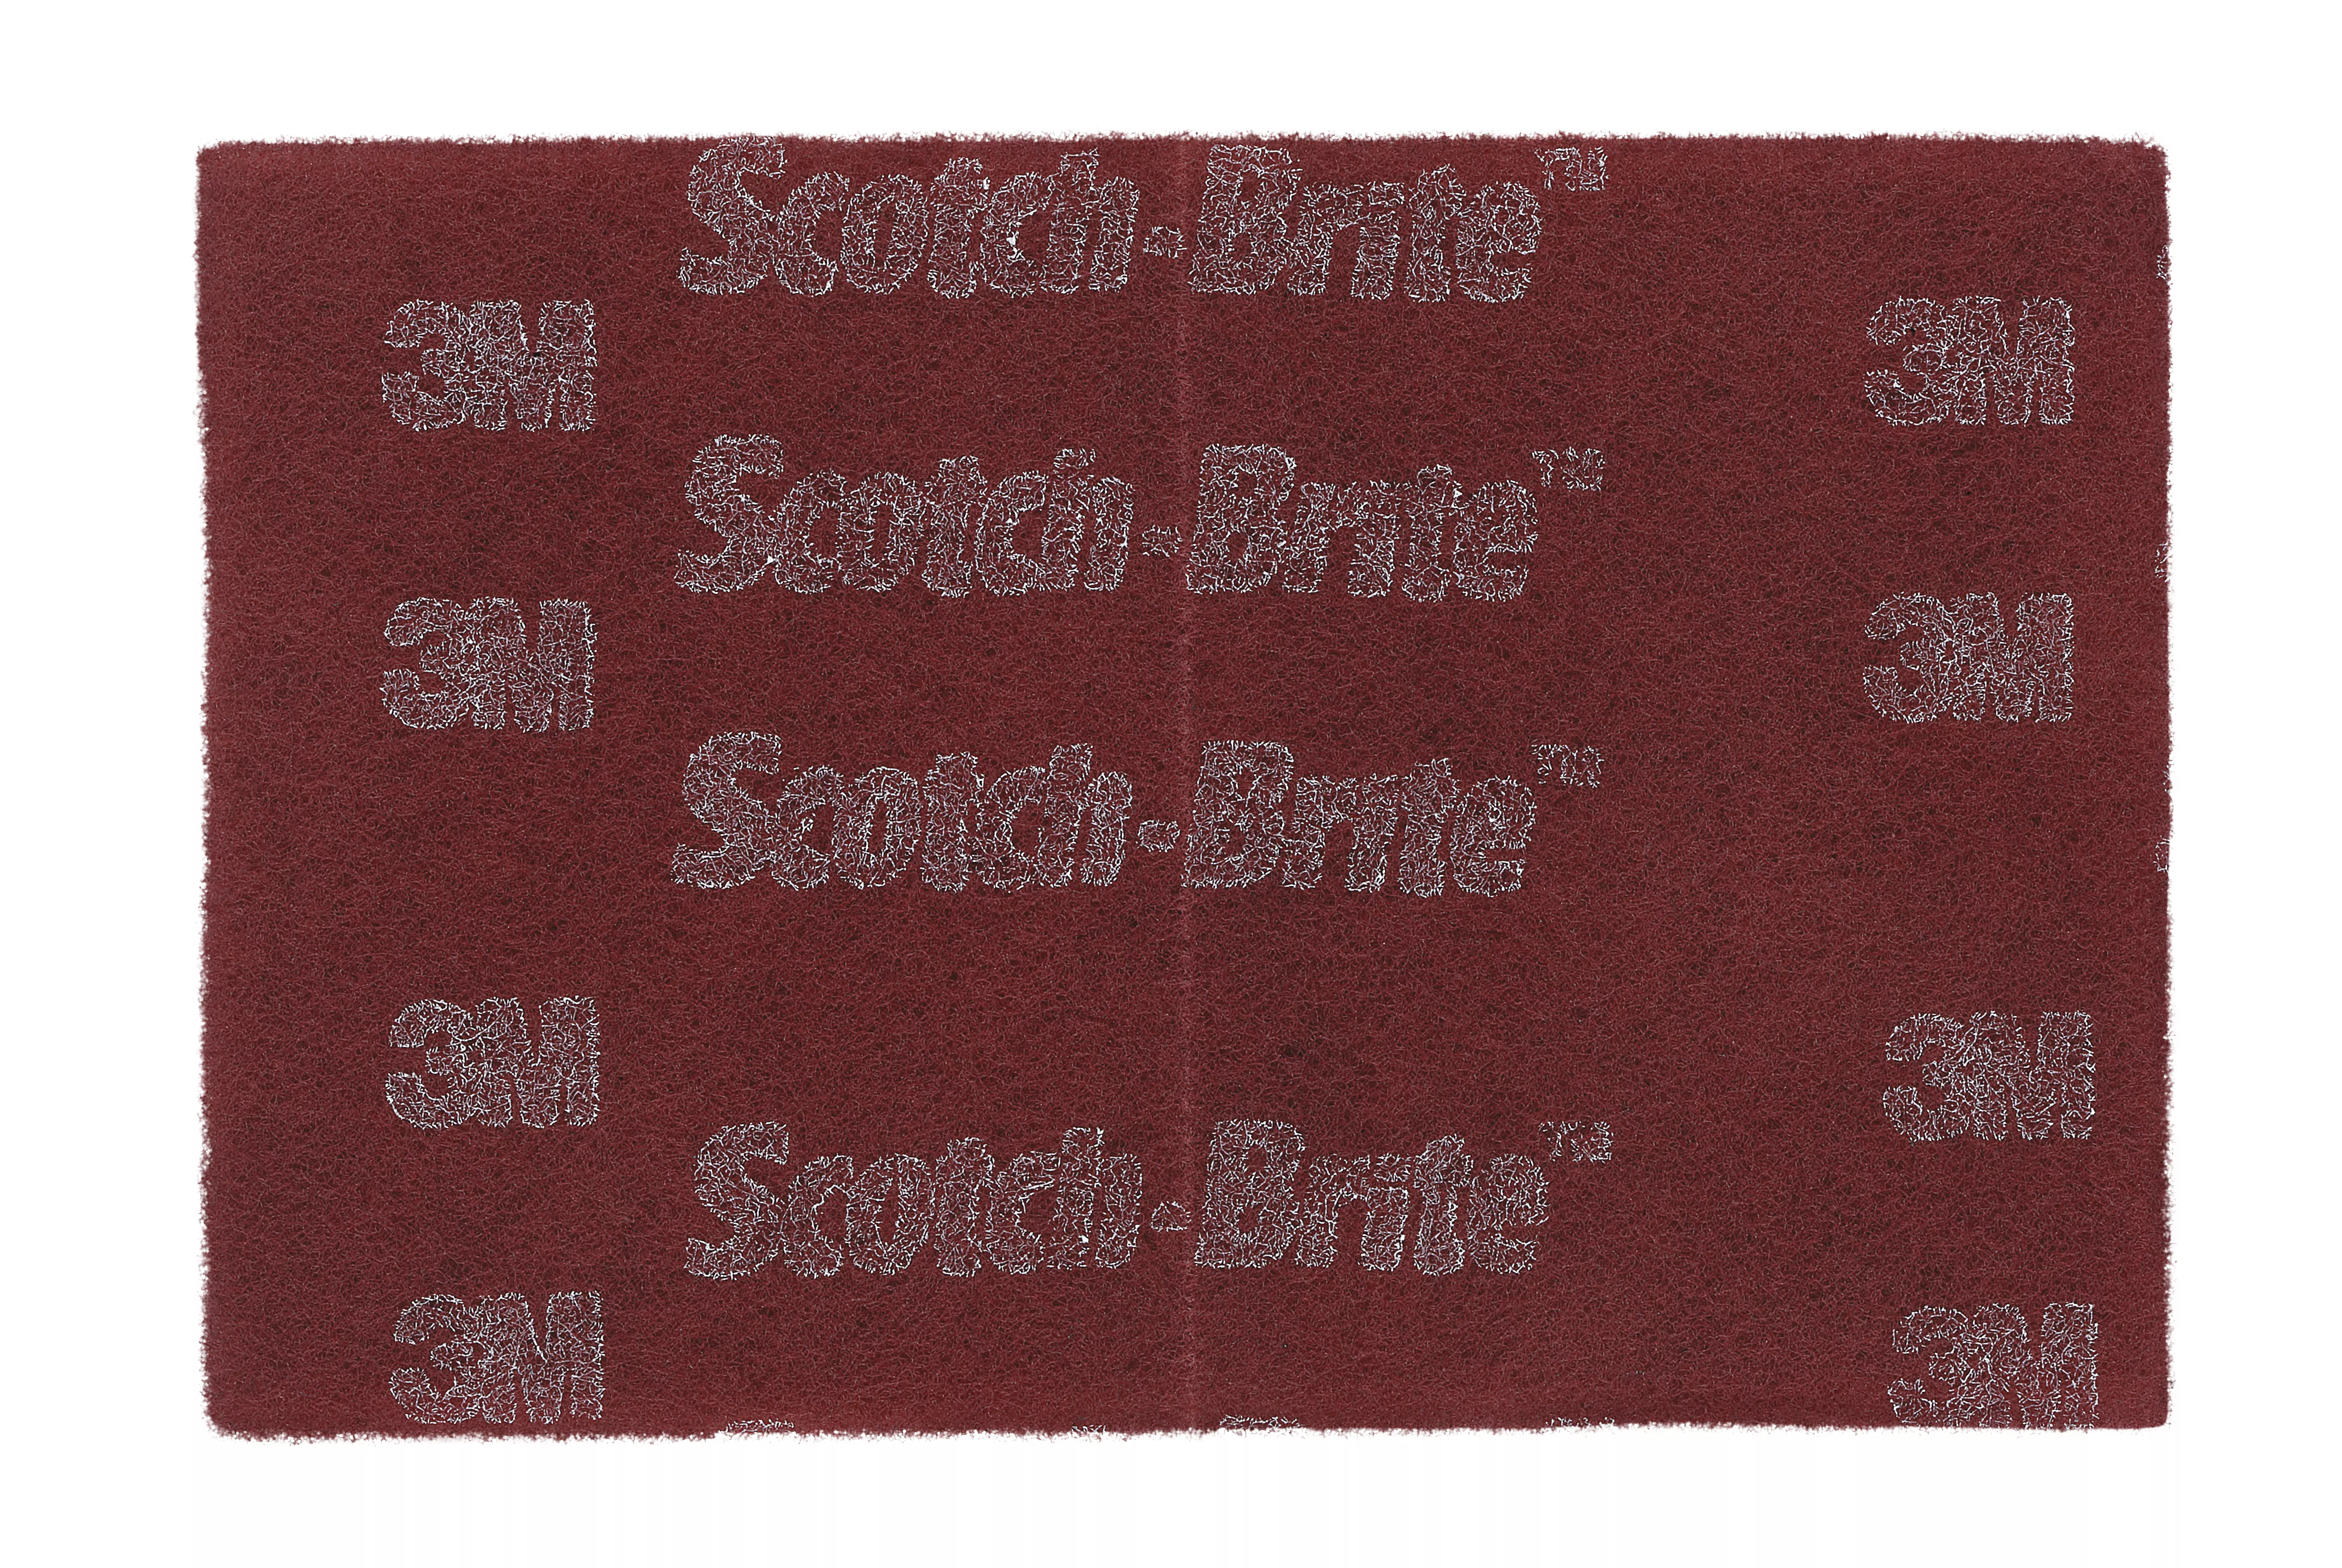 Scotch-Brite™ Hand Pad 7447, HP-HP, A/O Very Fine, Maroon, 6 in x 9 in,
10 ea/Case